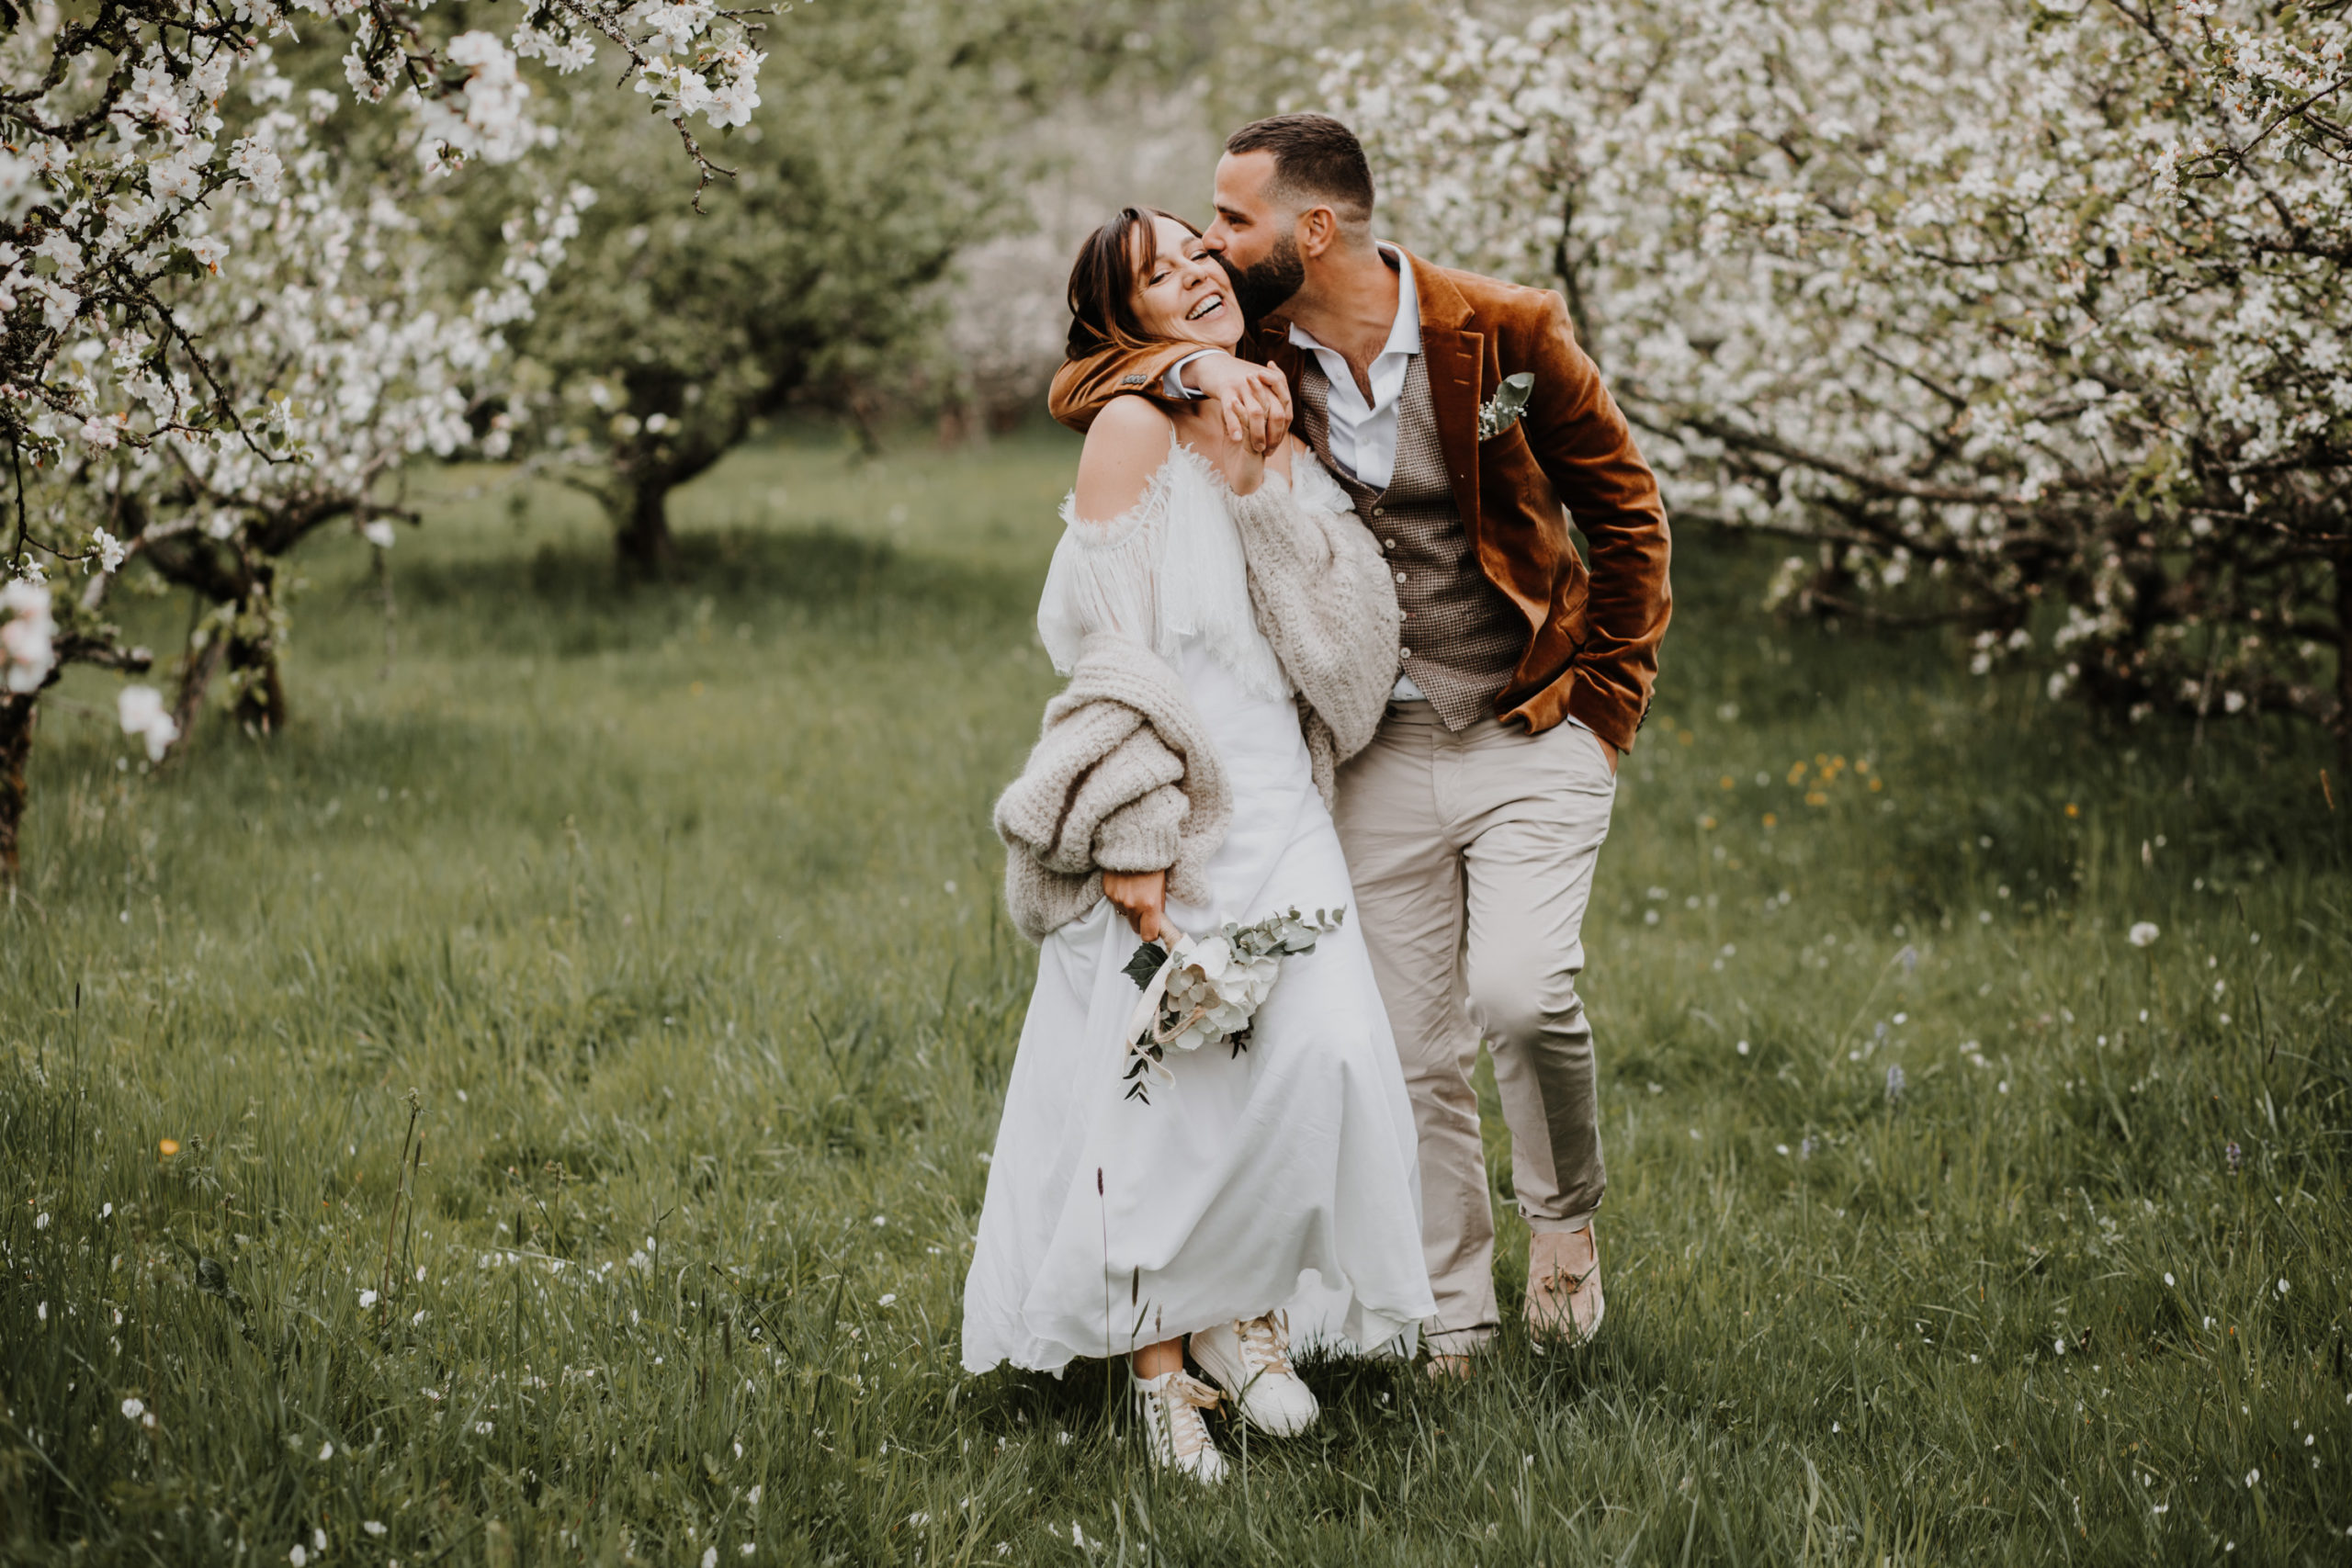 les mariés marchent en riant dans un verger en fleurs domaine saint loup